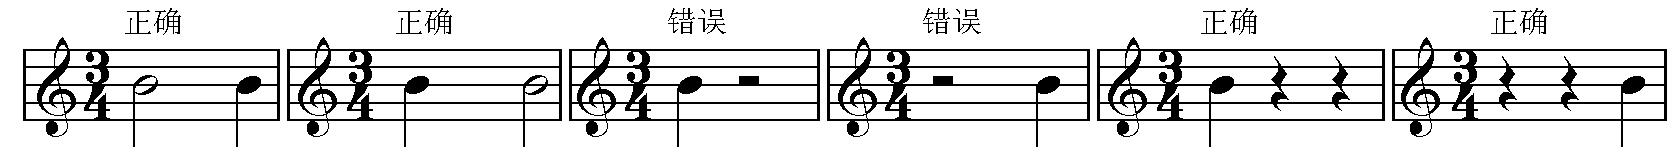 音值组合法基本规律 3.jpg